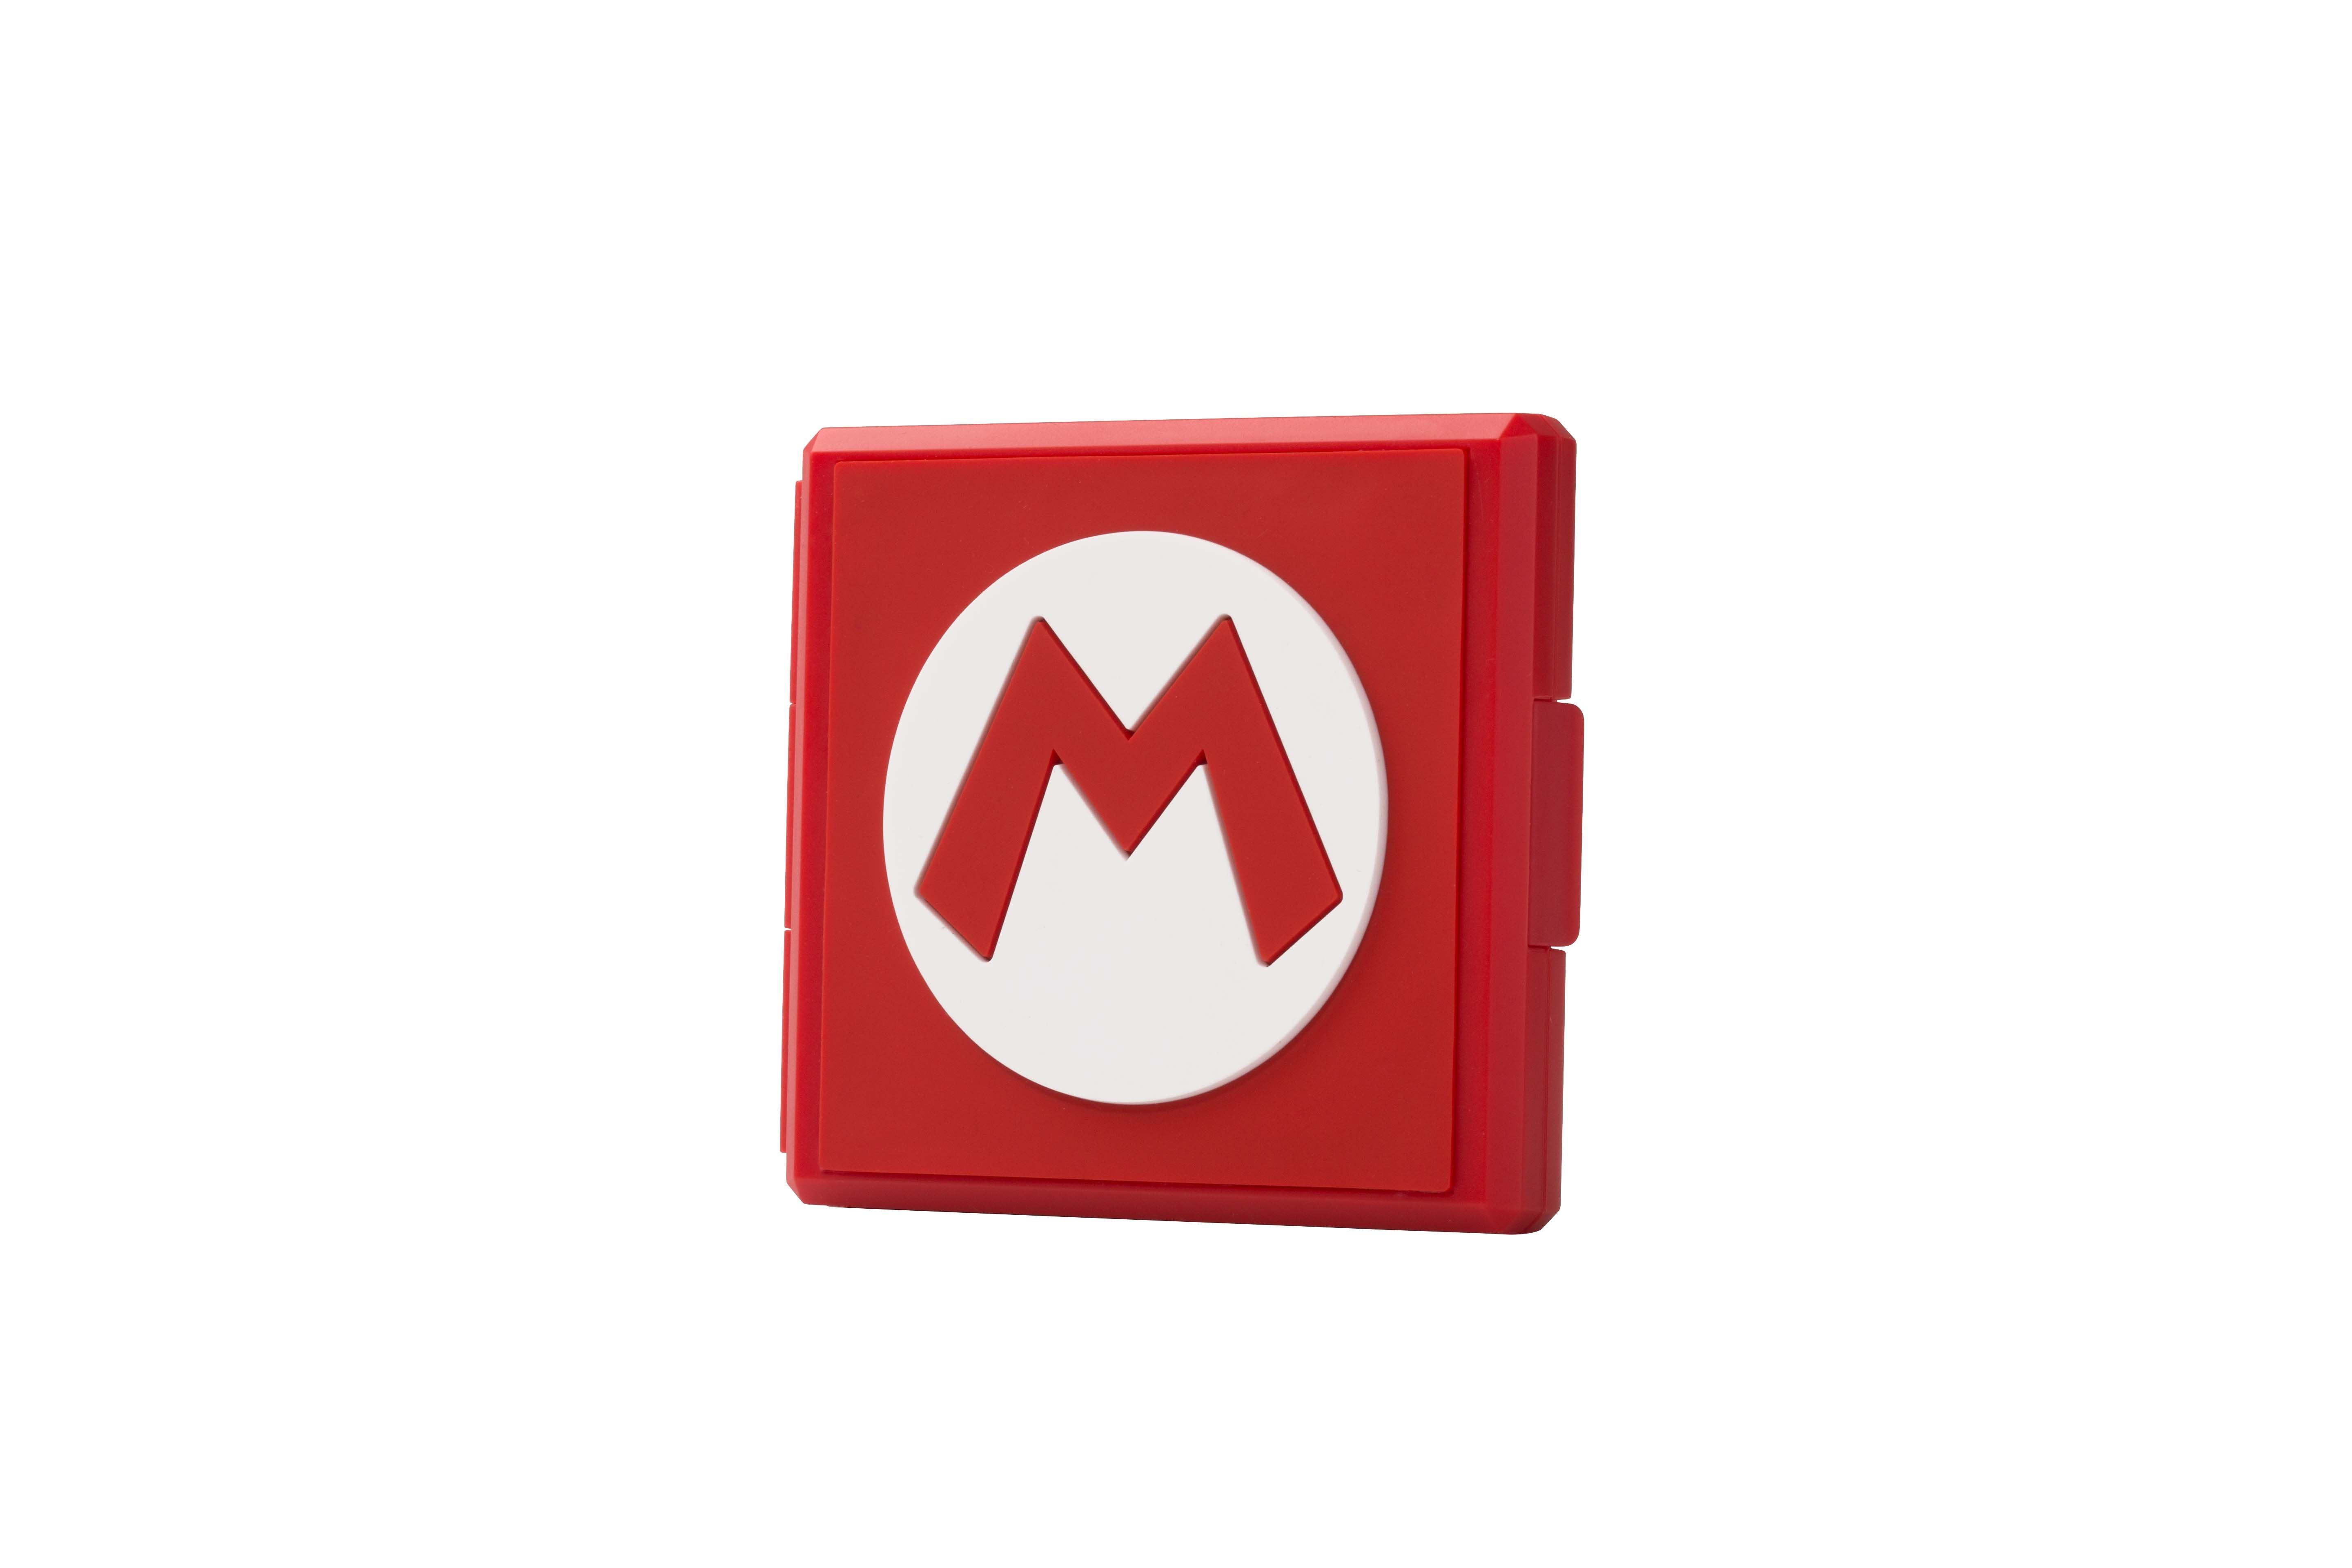 PowerA Premium Game Card Case for Nintendo Switch Super Mario